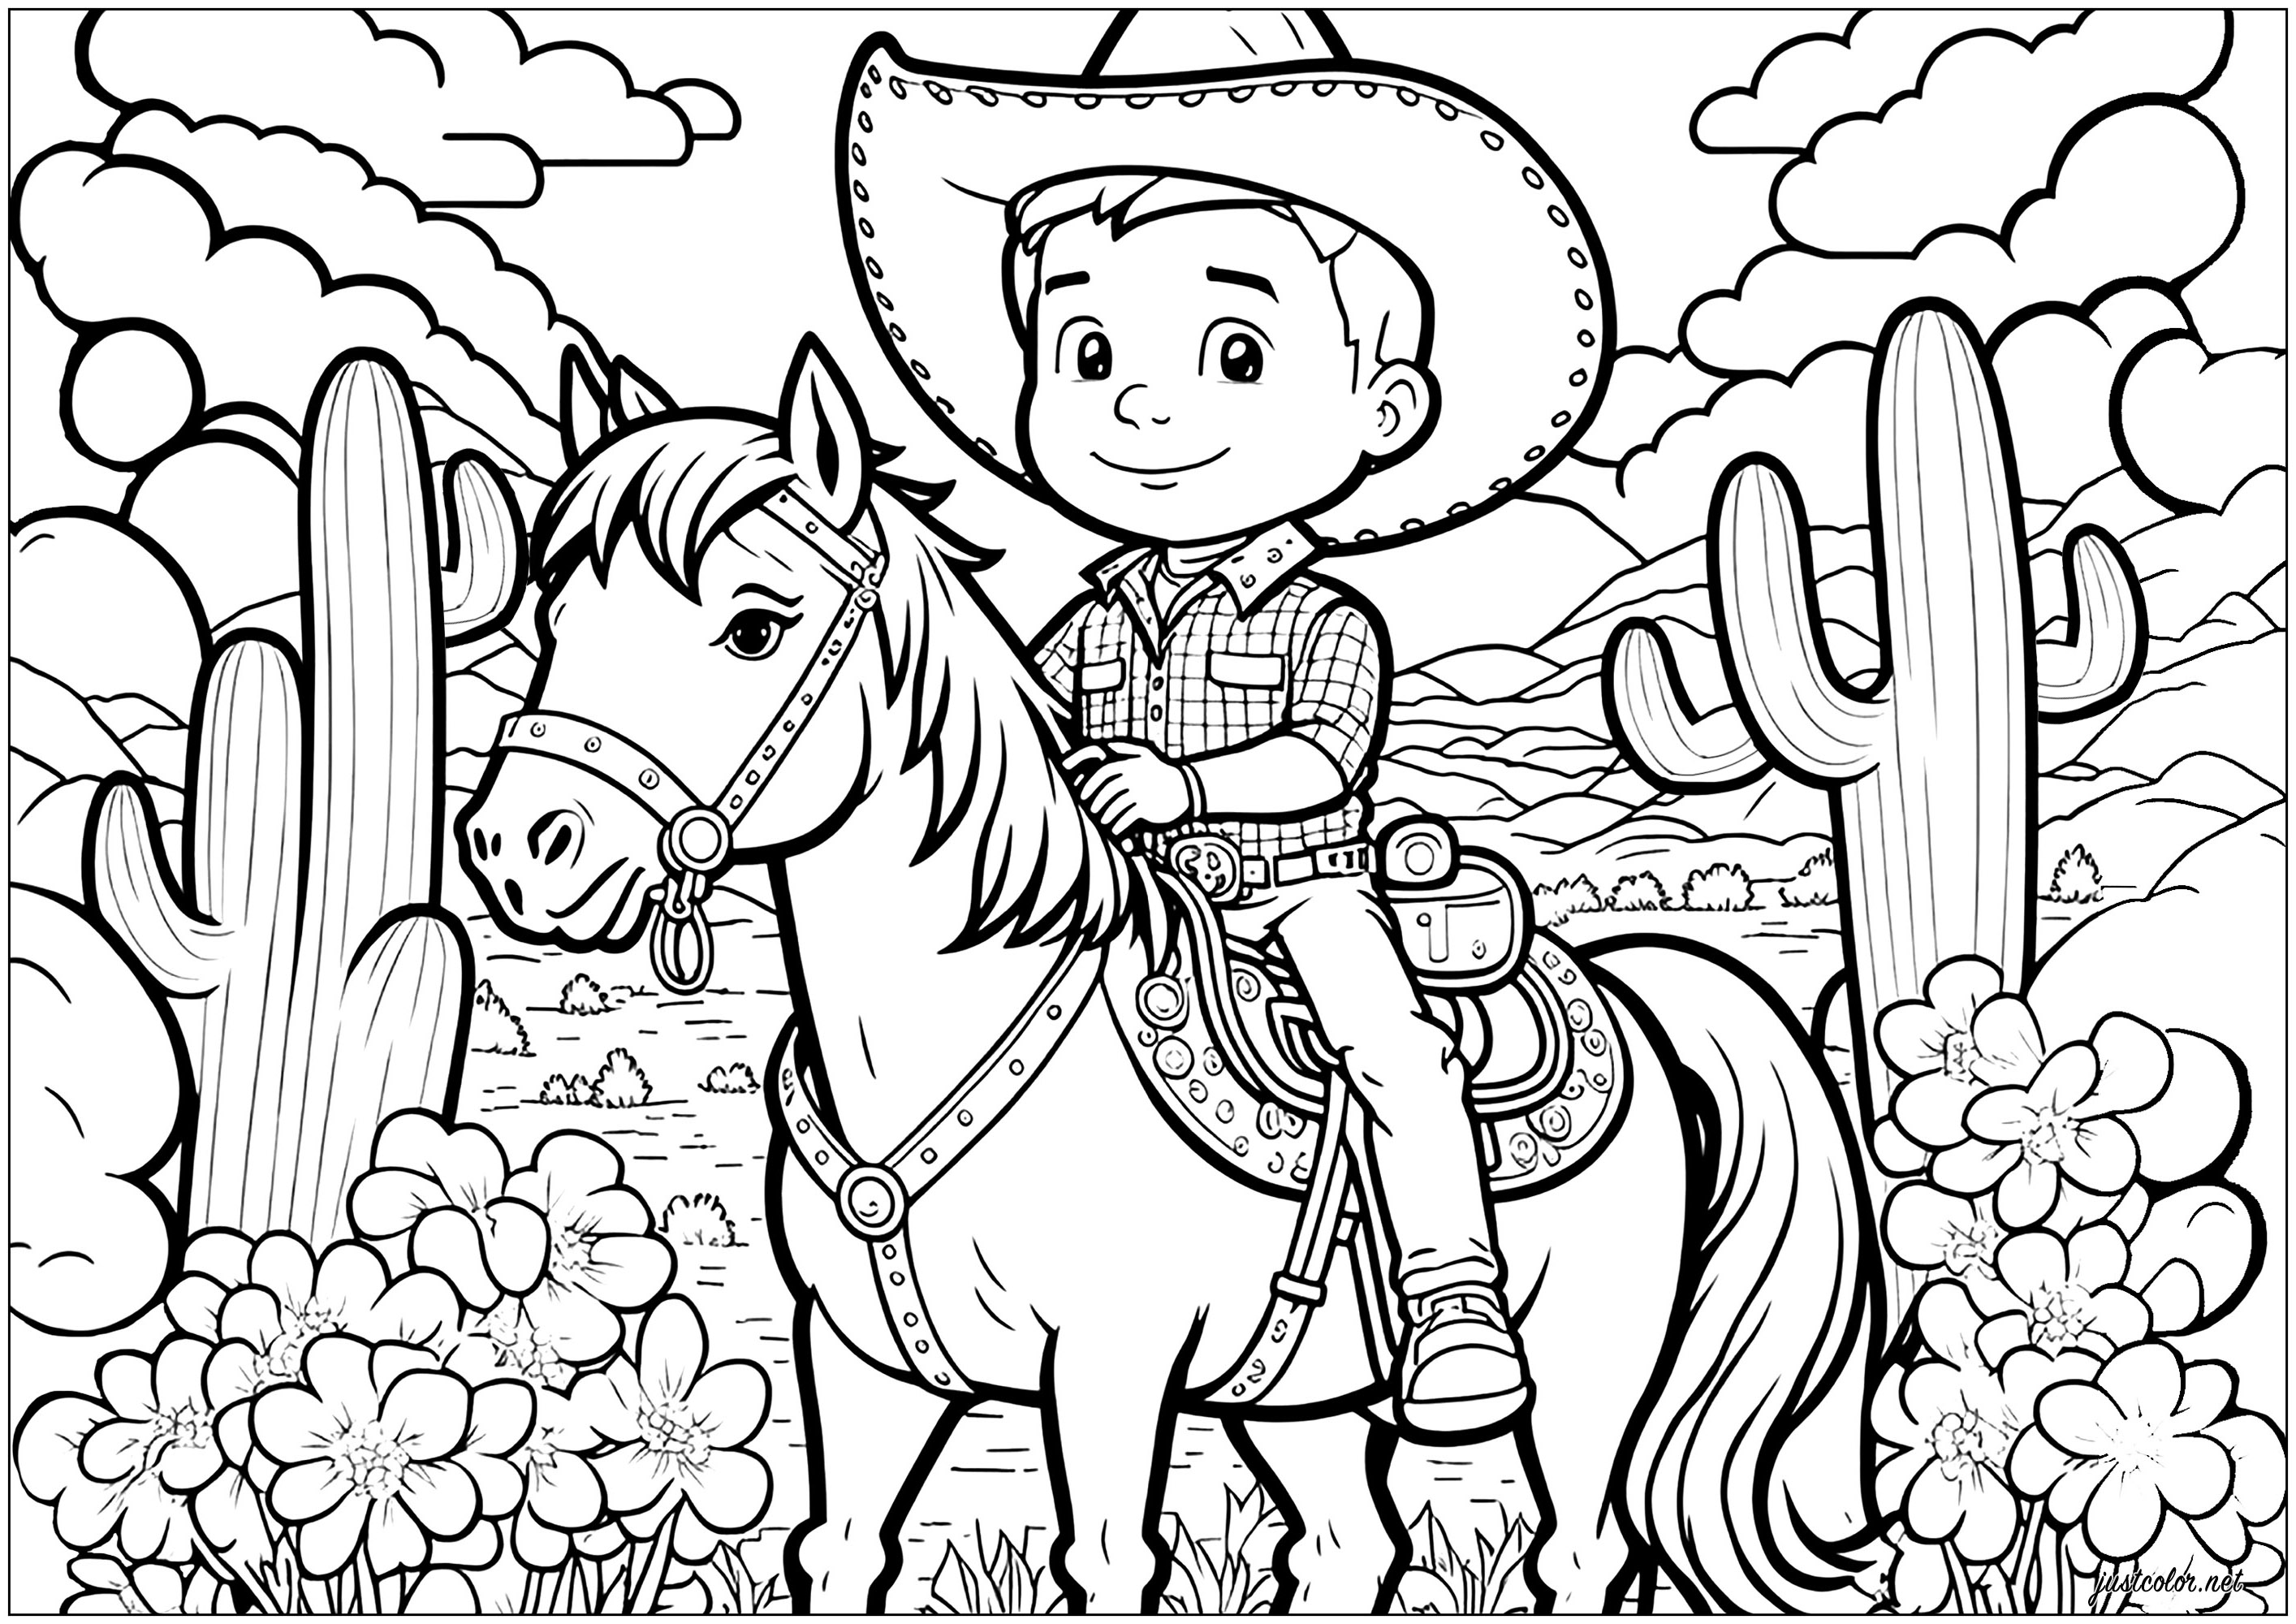 Färbe diesen Cowboy auf seinem Pferd, mit einem Hintergrund, der von Western und Far West inspiriert ist!. Eine angenommene Cartoon-Stil Färbung Seite, verwenden Sie Ihre hellsten und hellsten Farben!